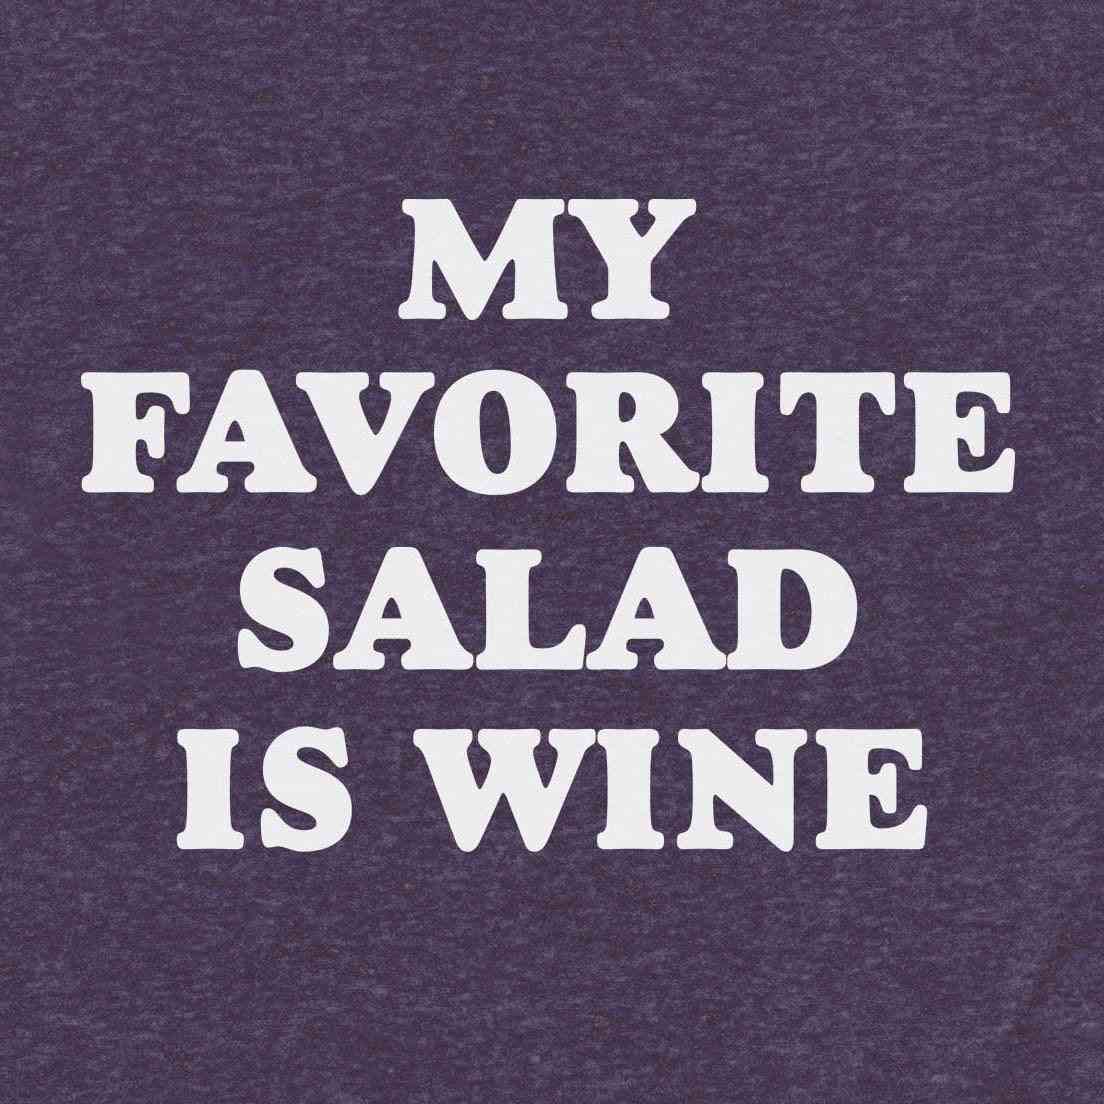 Ma salade préférée est le vin - chemise douce et confortable